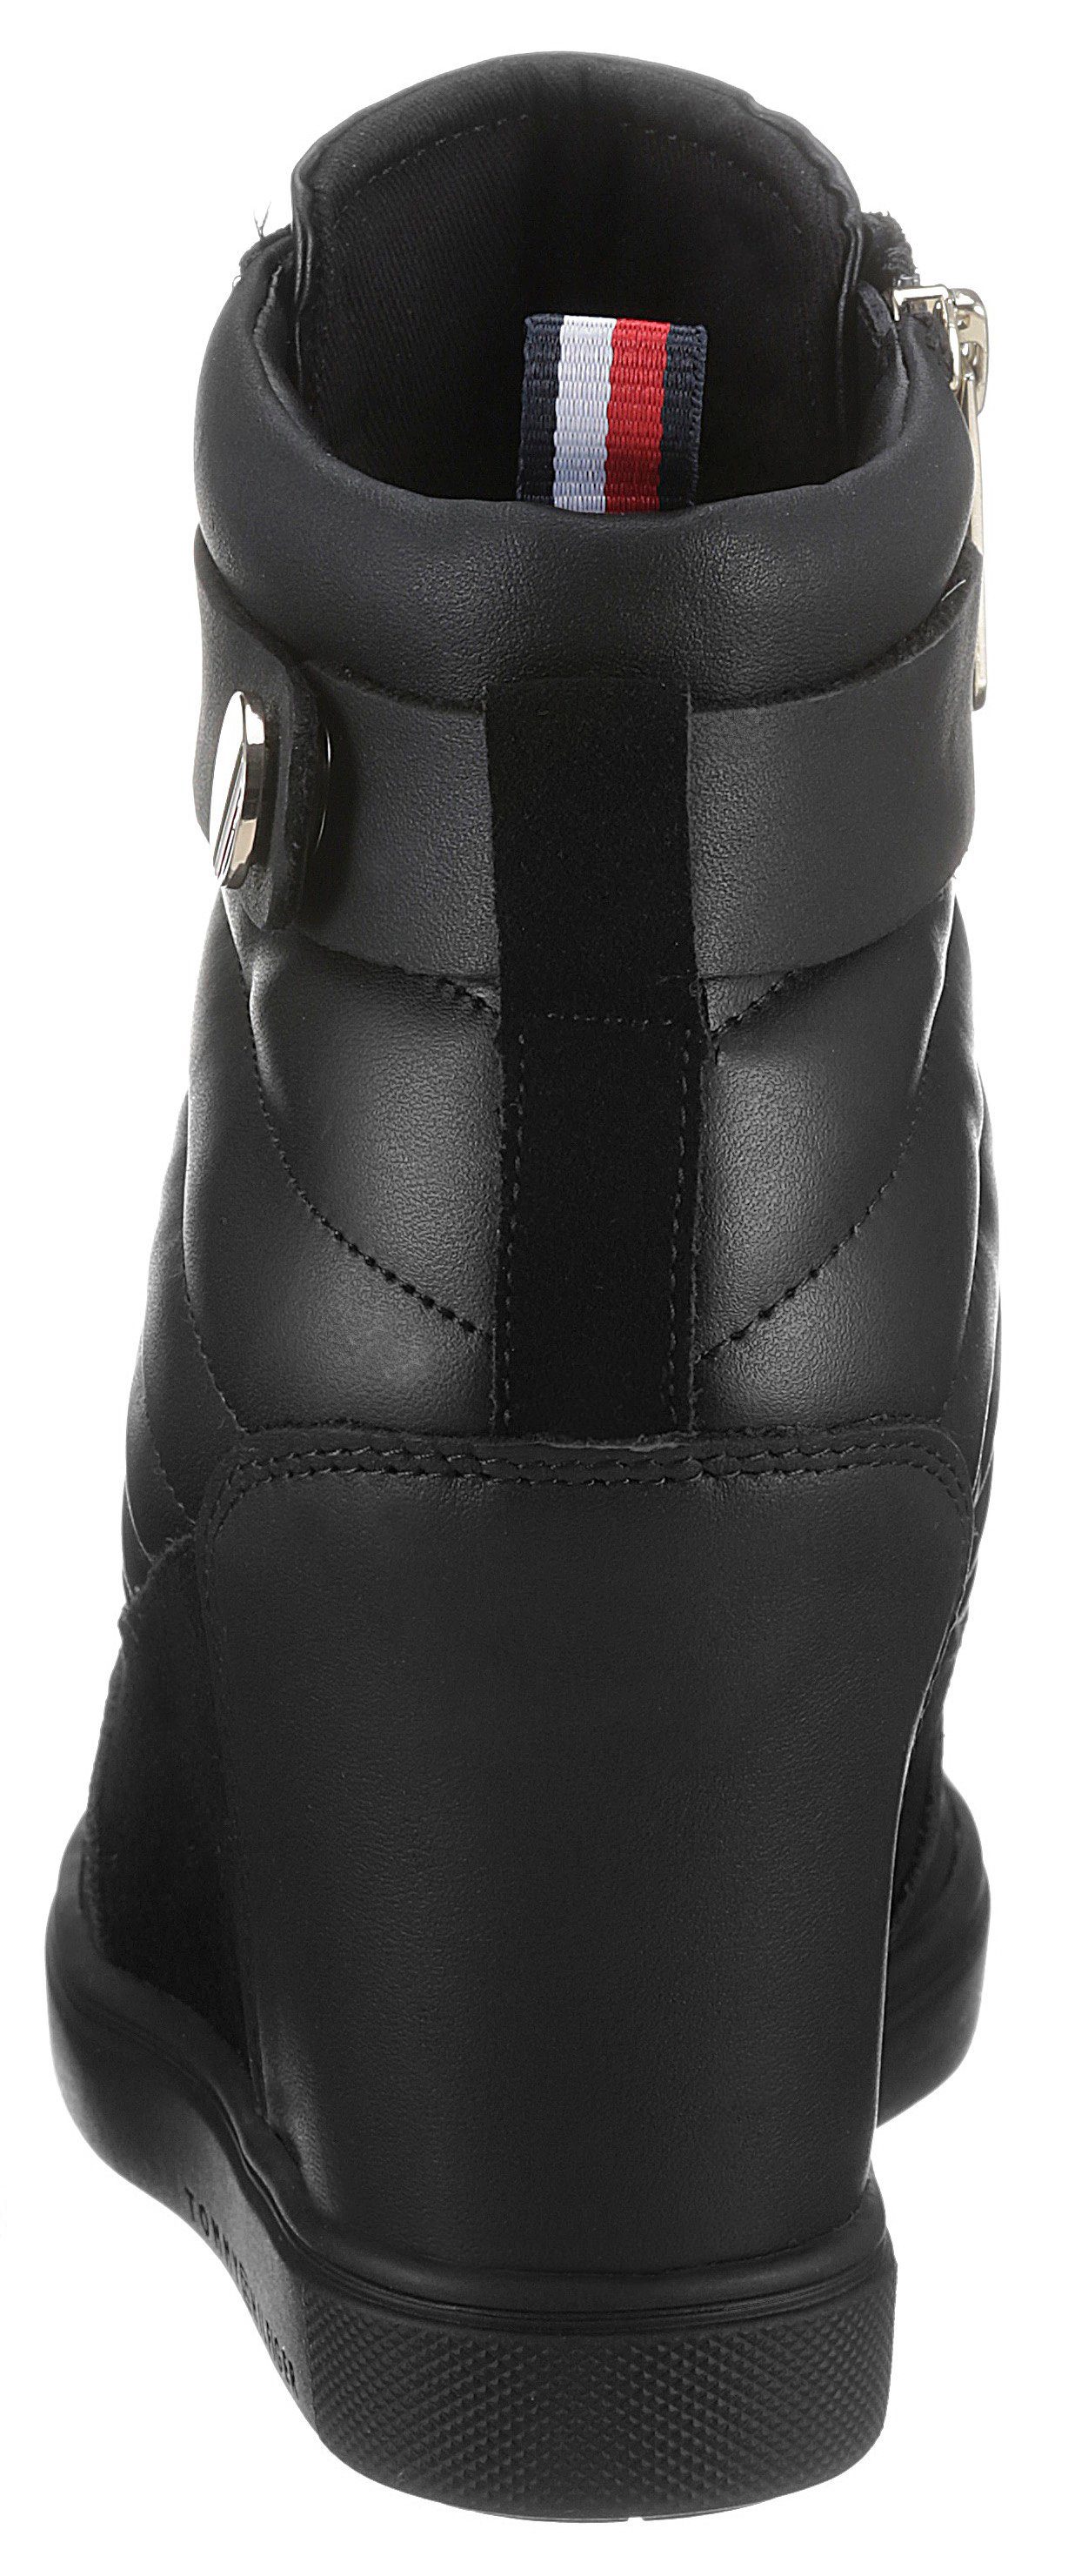 SNEAKER BOOT Tommy Keilsneaker mit innenliegendem Hilfiger Keilabsatz schwarz WEDGE